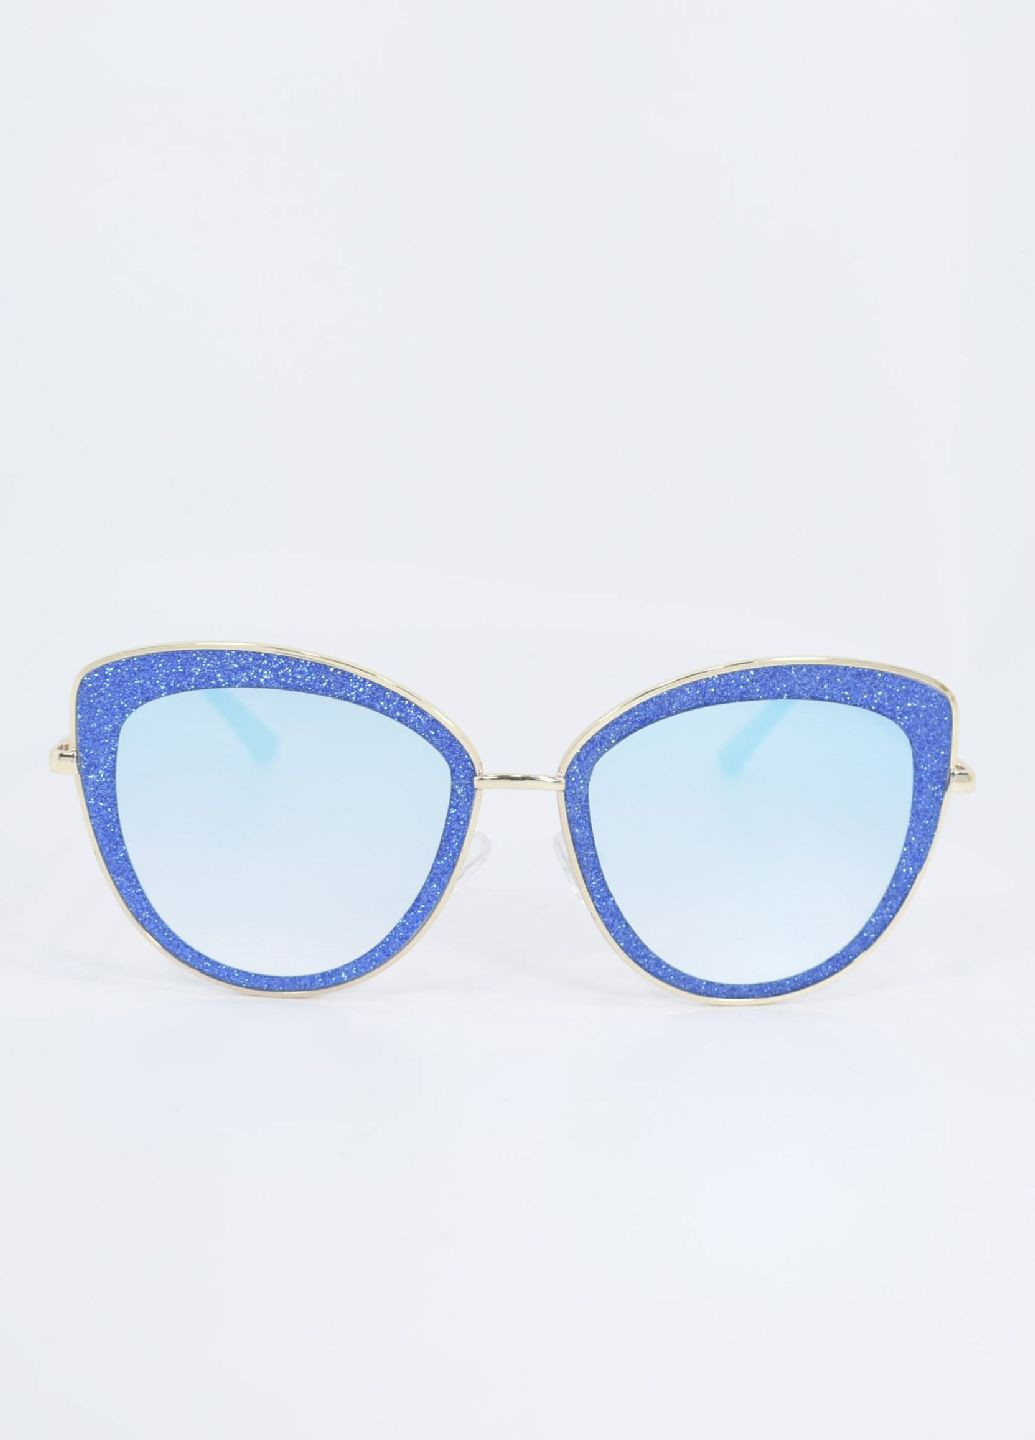 Солнцезащитные очки 100153 Merlini голубые